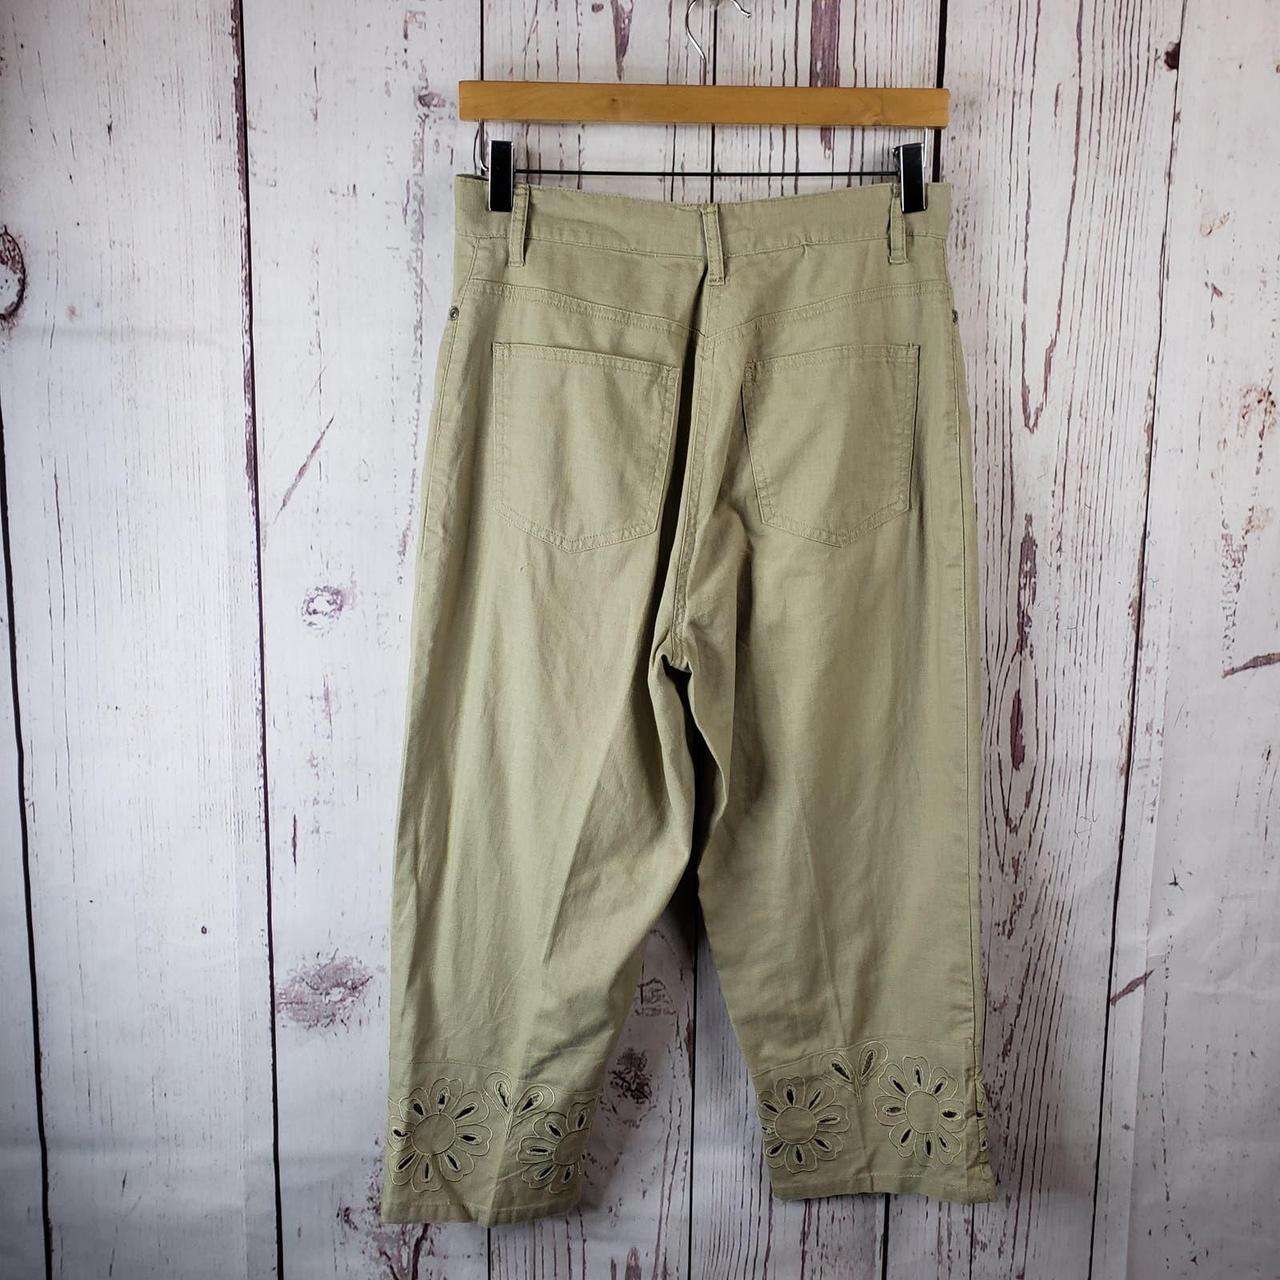 Sonoma Cotton Capris & Cropped Pants